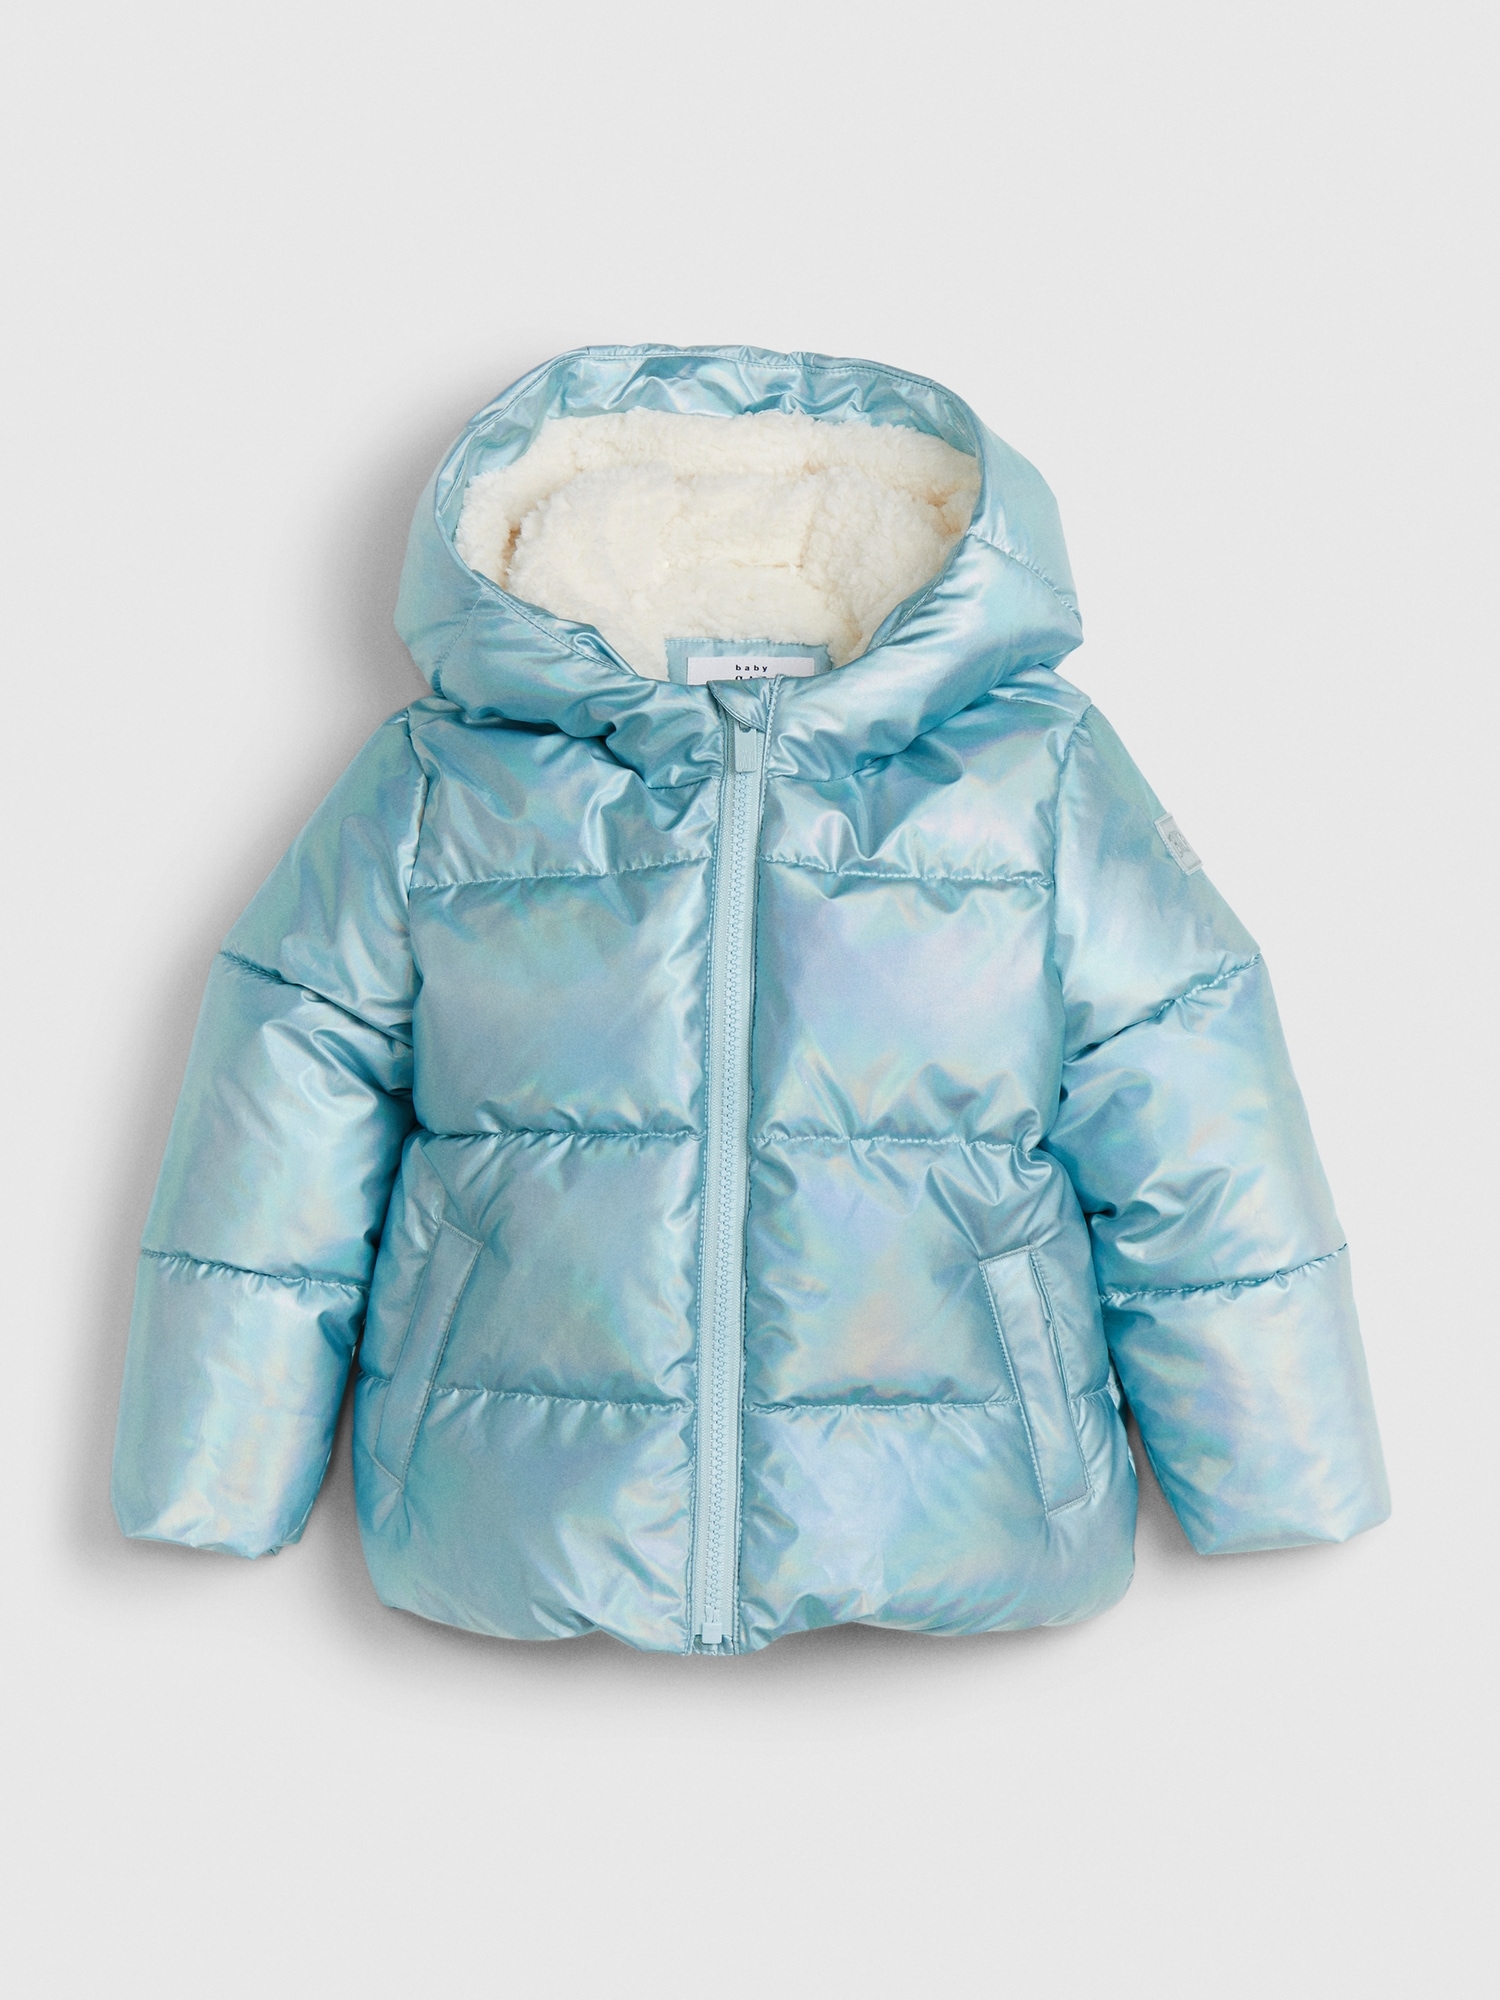 gap puffer jacket toddler girl